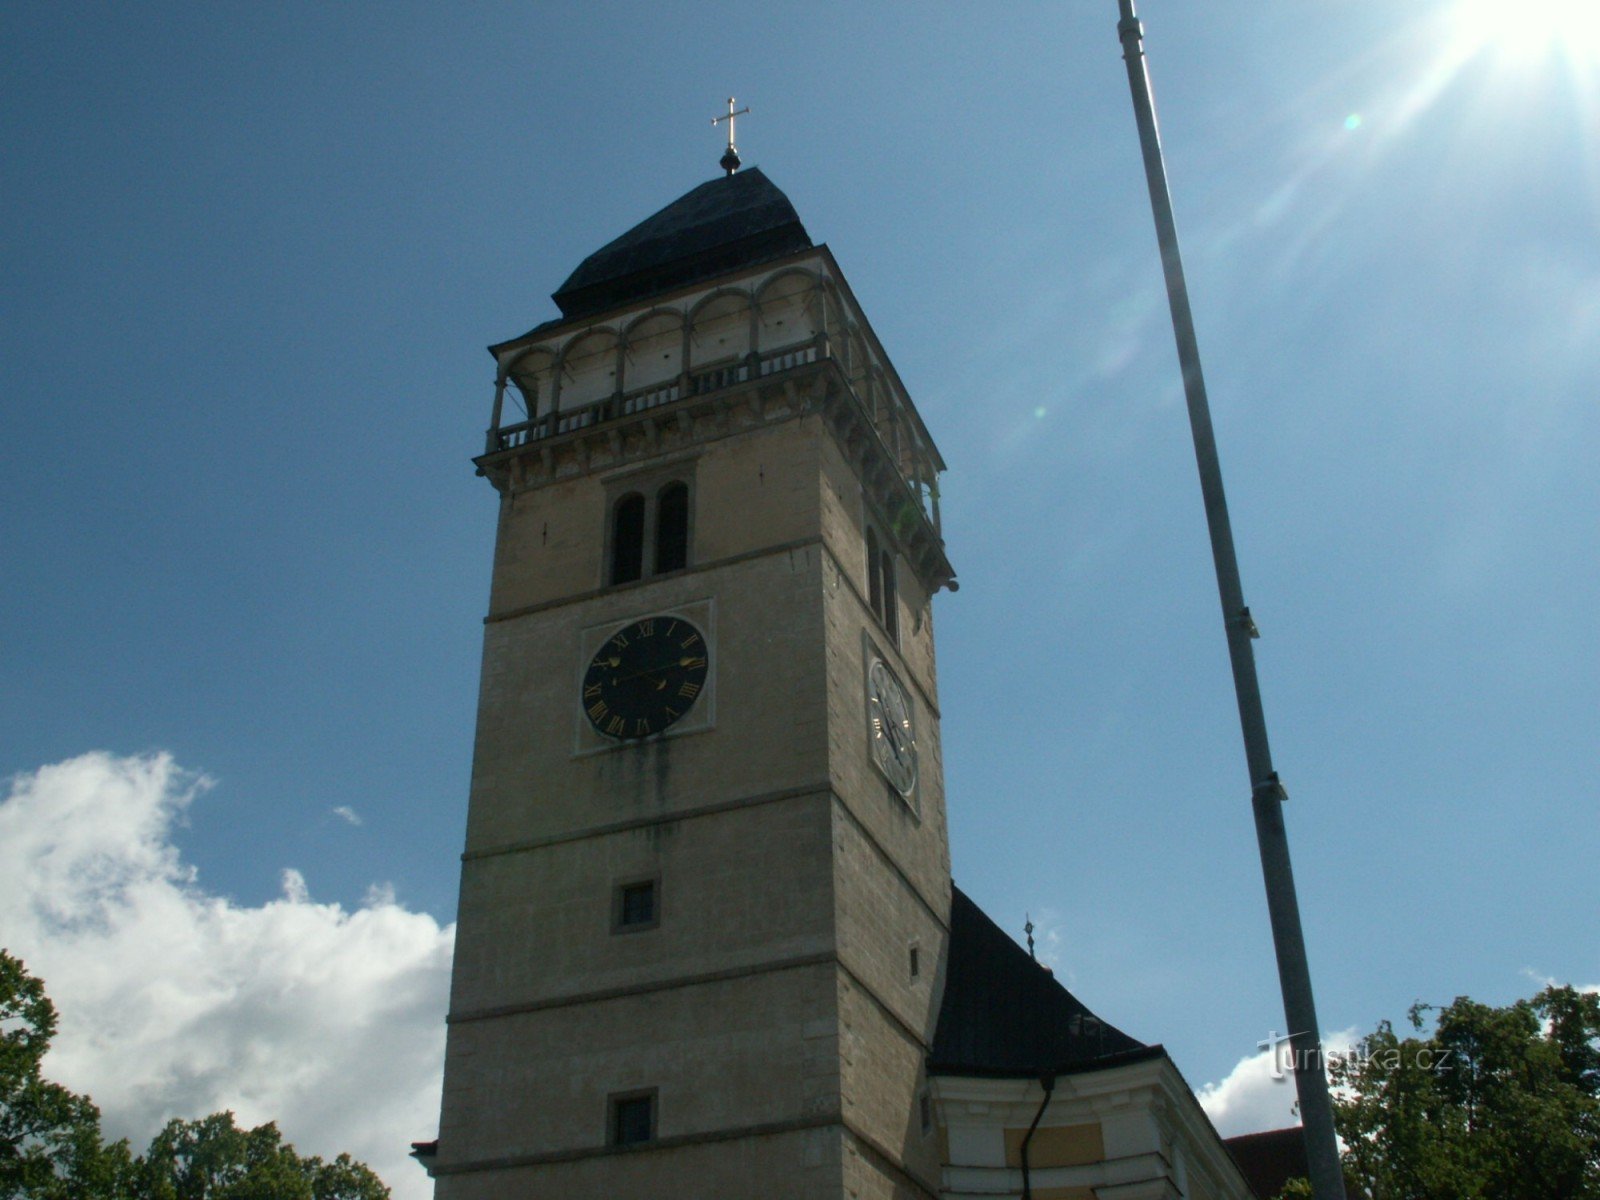 Det vackra renässanstornet vid kyrkan St. Lawrence i Dačice. Efter att ha klättrat 150 trappsteg till